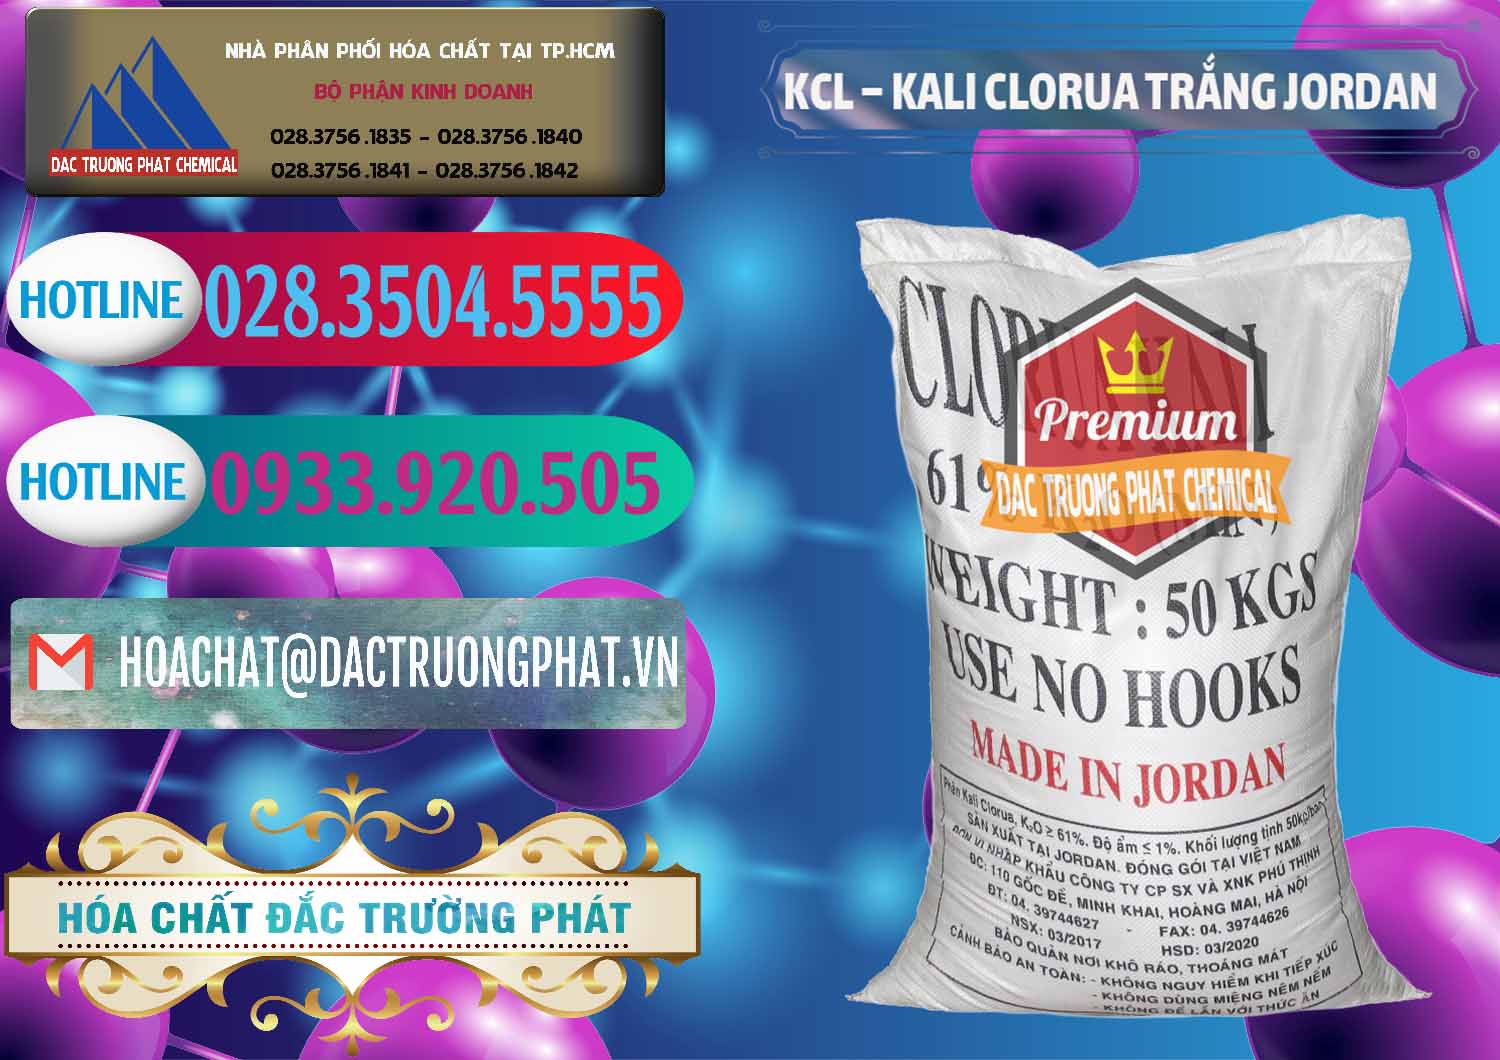 Cty bán và cung cấp KCL – Kali Clorua Trắng Jordan - 0088 - Nơi chuyên phân phối & bán hóa chất tại TP.HCM - truongphat.vn